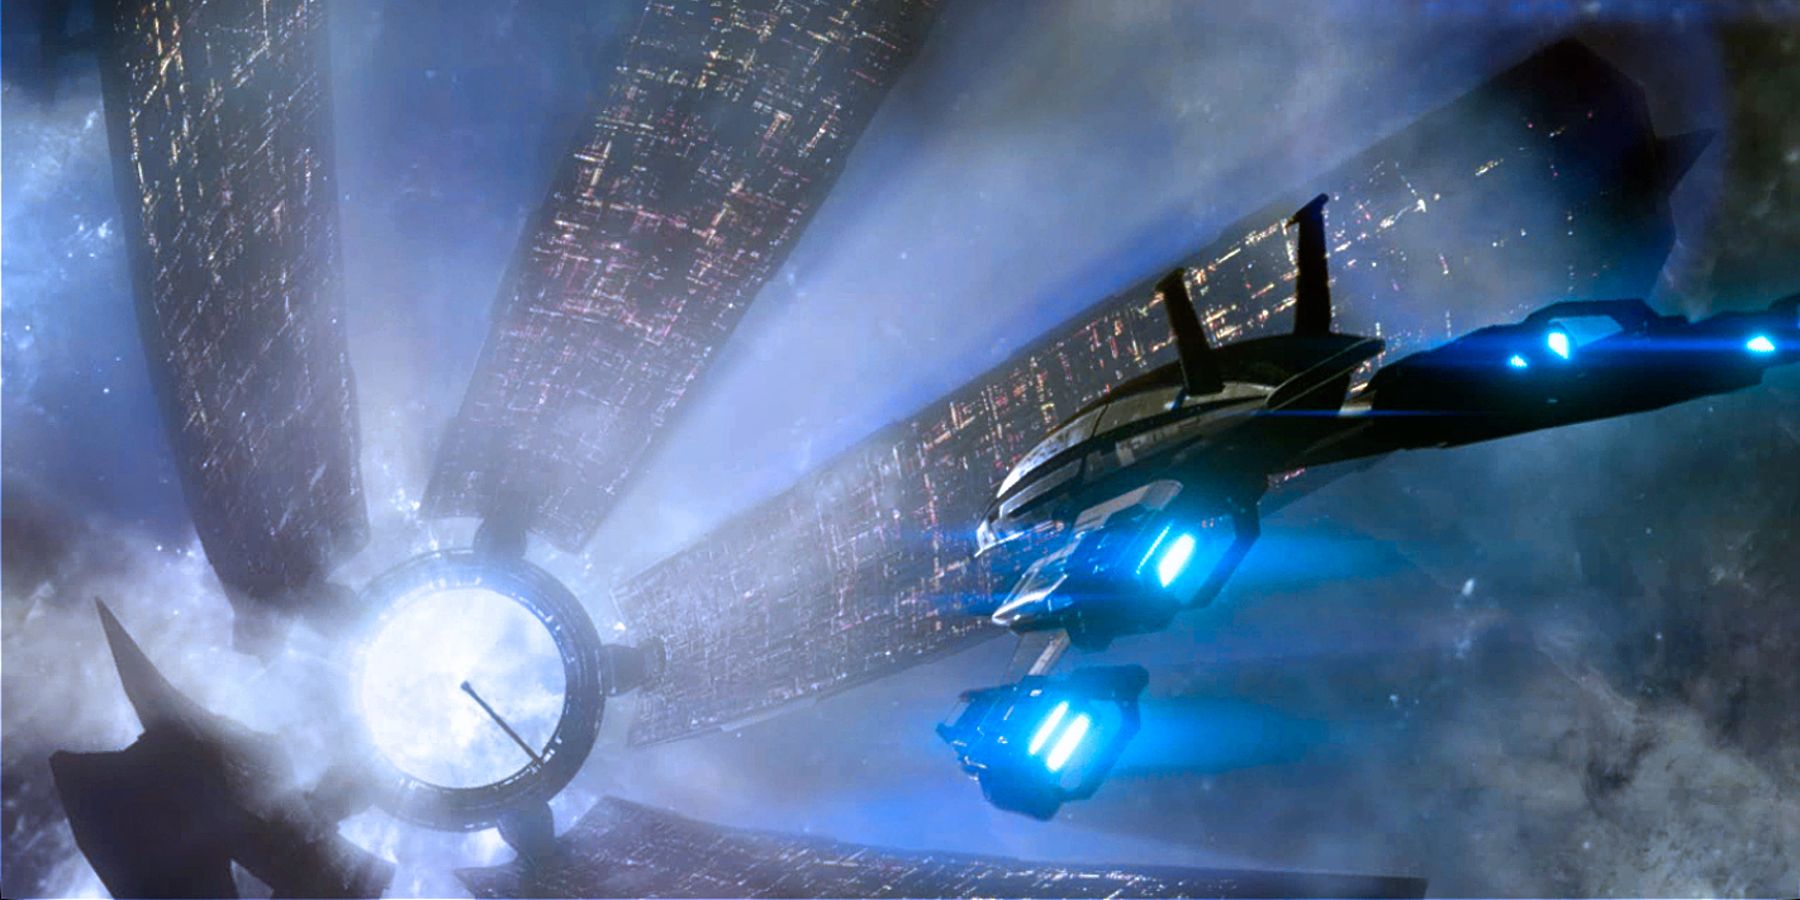 مروحة Mass Effect تظهر قبالة لوحة نورماندي المذهلة